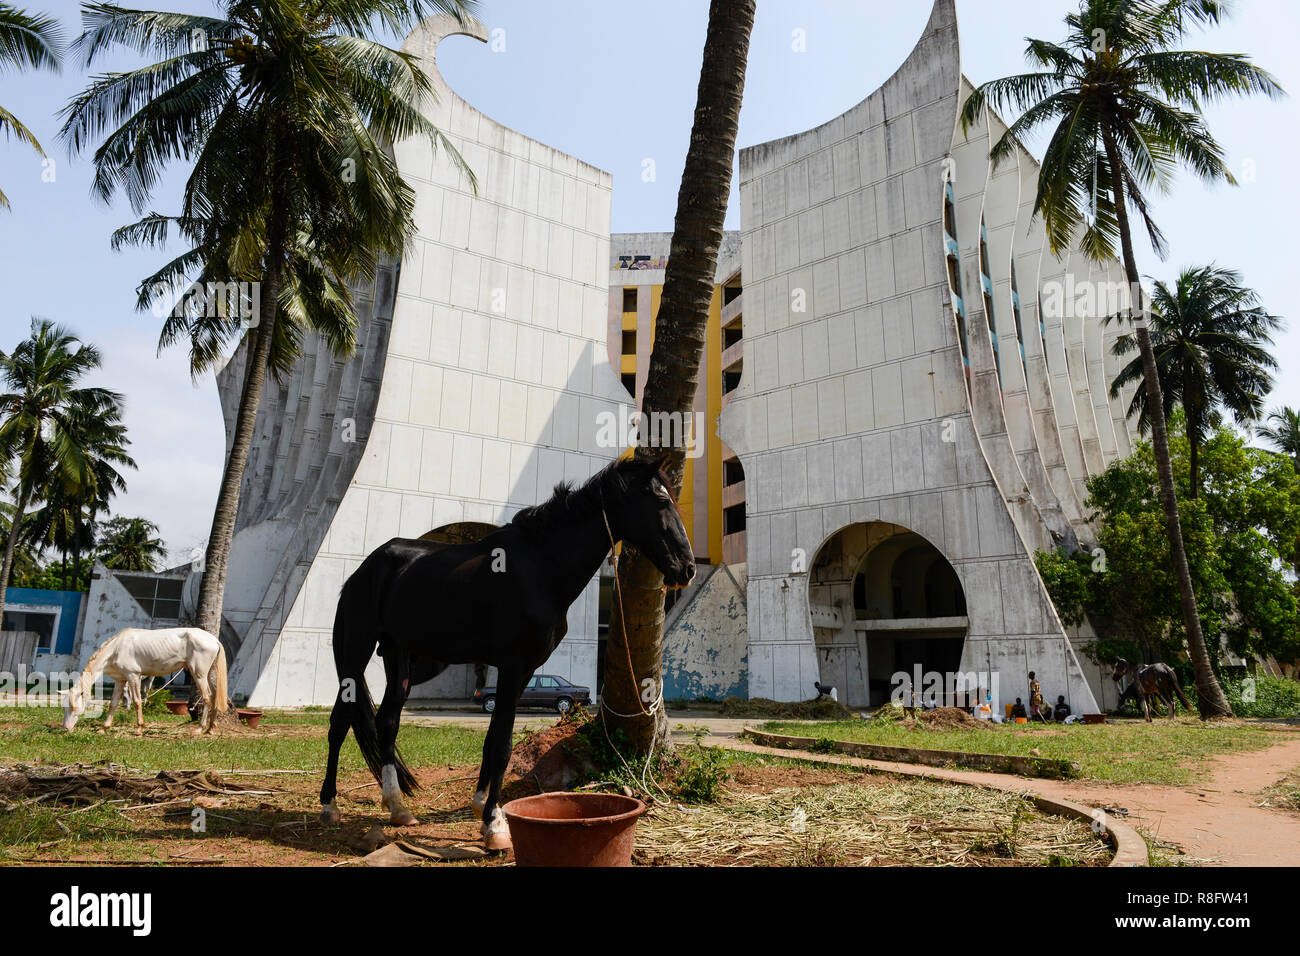 TOGO, Lomé, desde 2005 han abandonado el Hotel de la Paix en Boulevard du Mono, construido en el año 1970'íes y gestionado por PULLMAN Group, en frente de la playa de pastoreo caballos / verlassenenes Hotel des Friedens, davor grasende Strandpferde Foto de stock